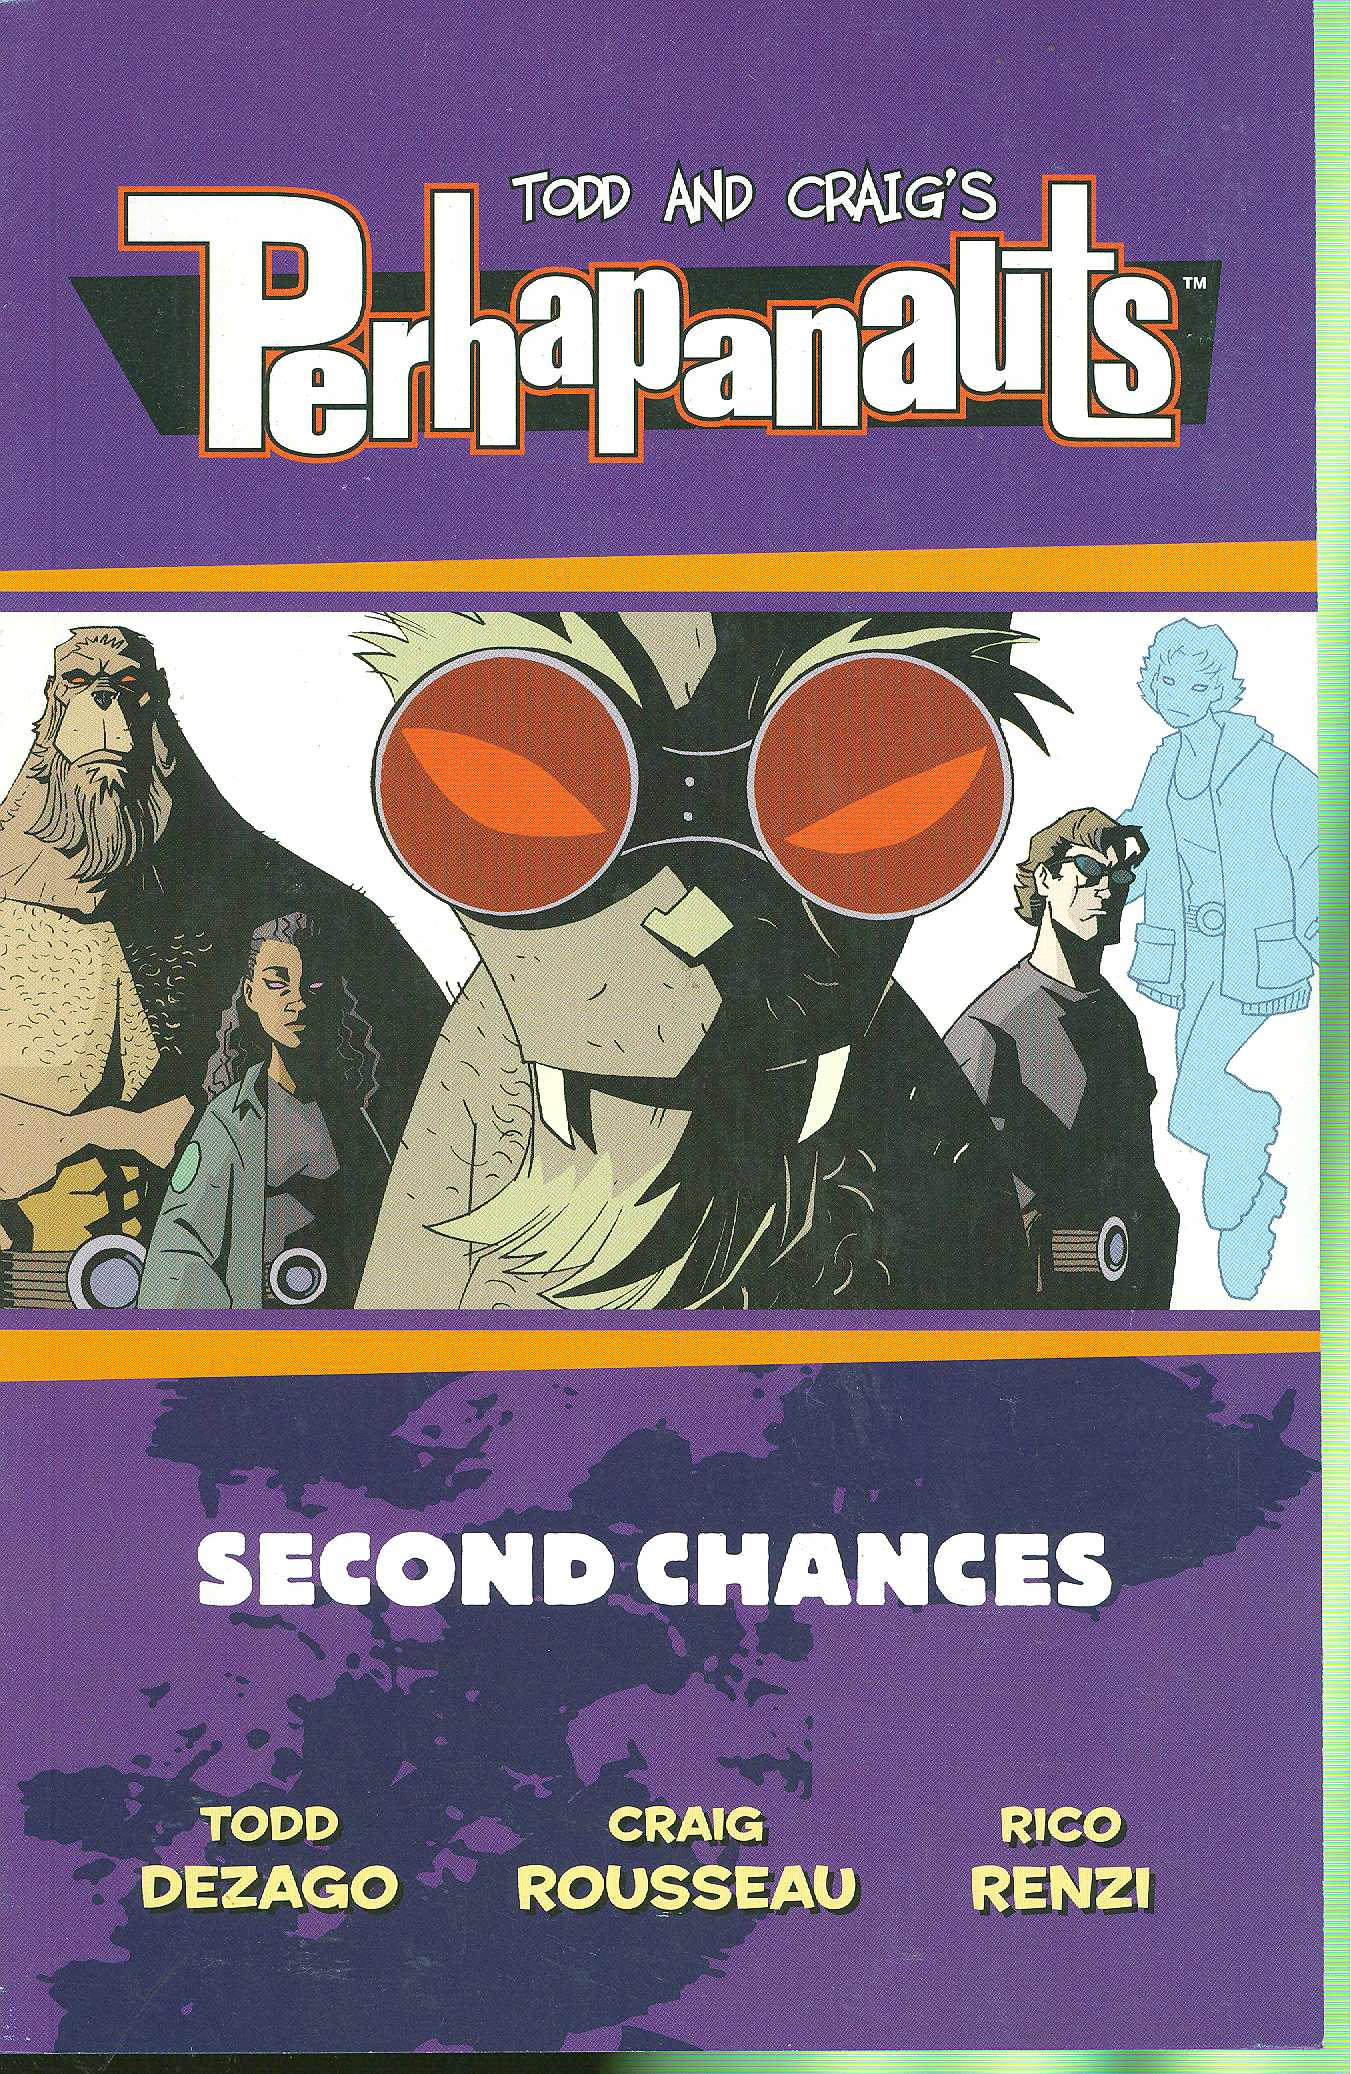 Perhapanauts Second Chances Graphic Novel